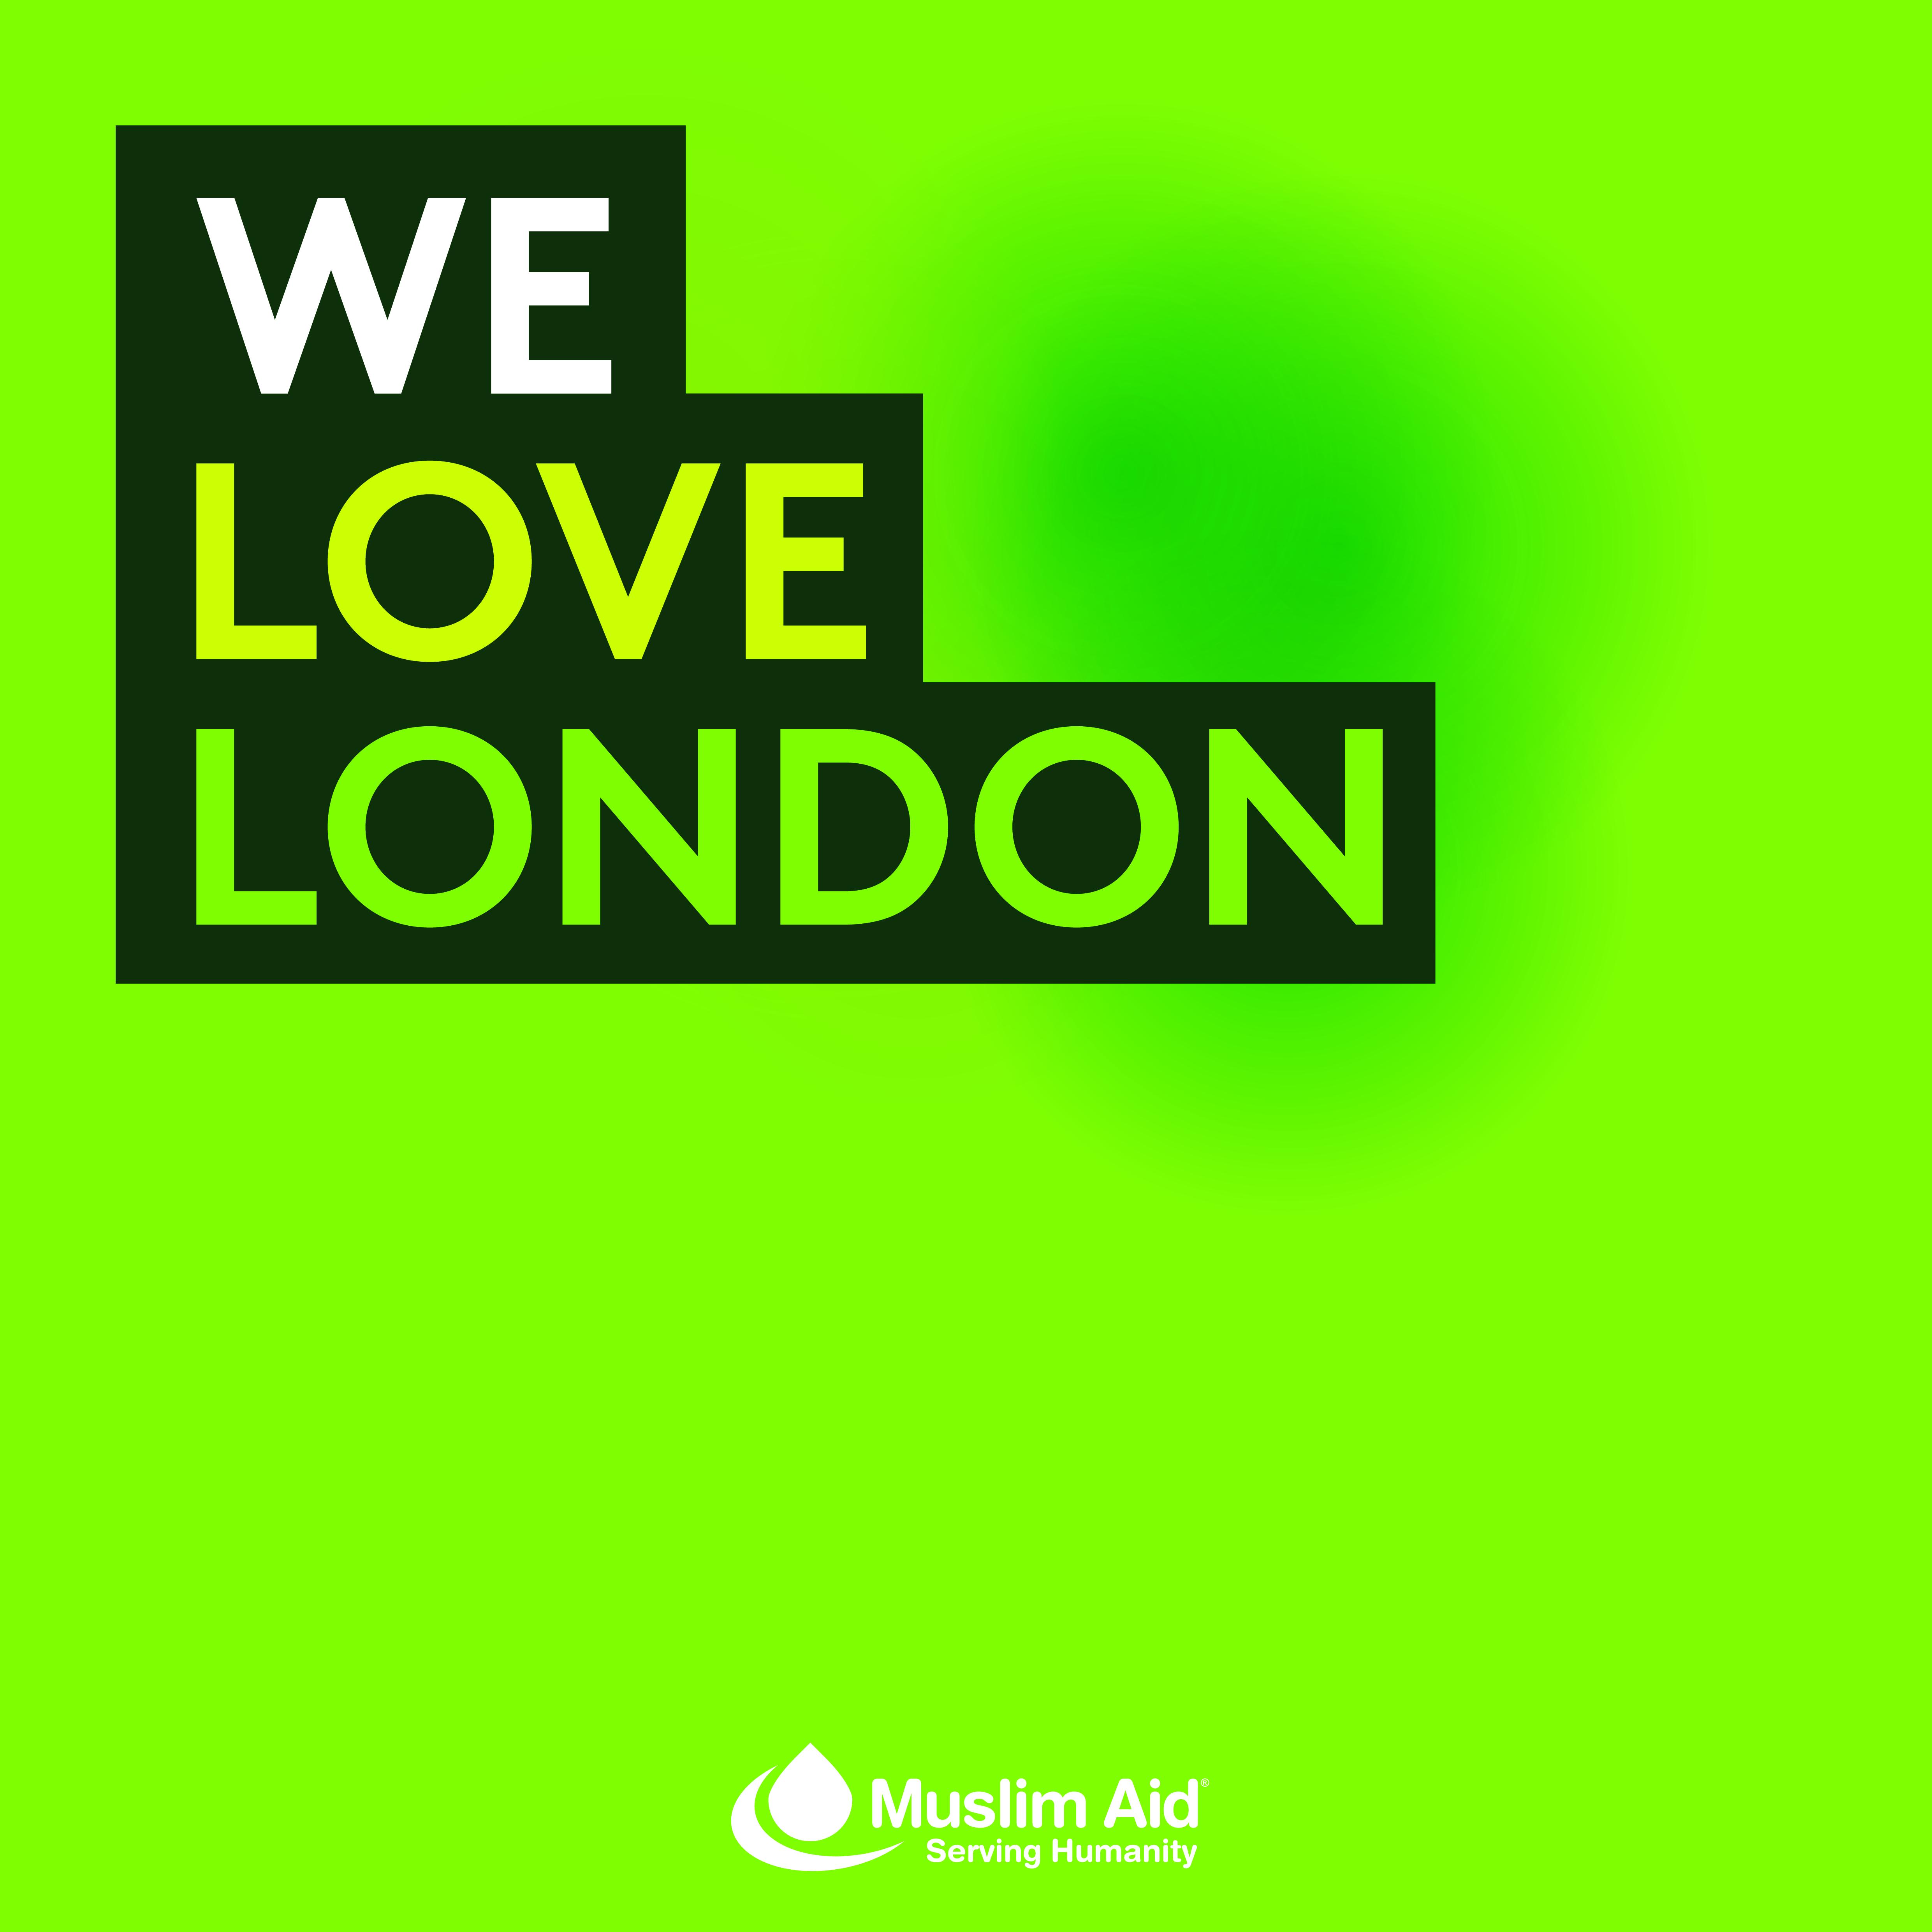 Muslim Aid condemns London terror attacks